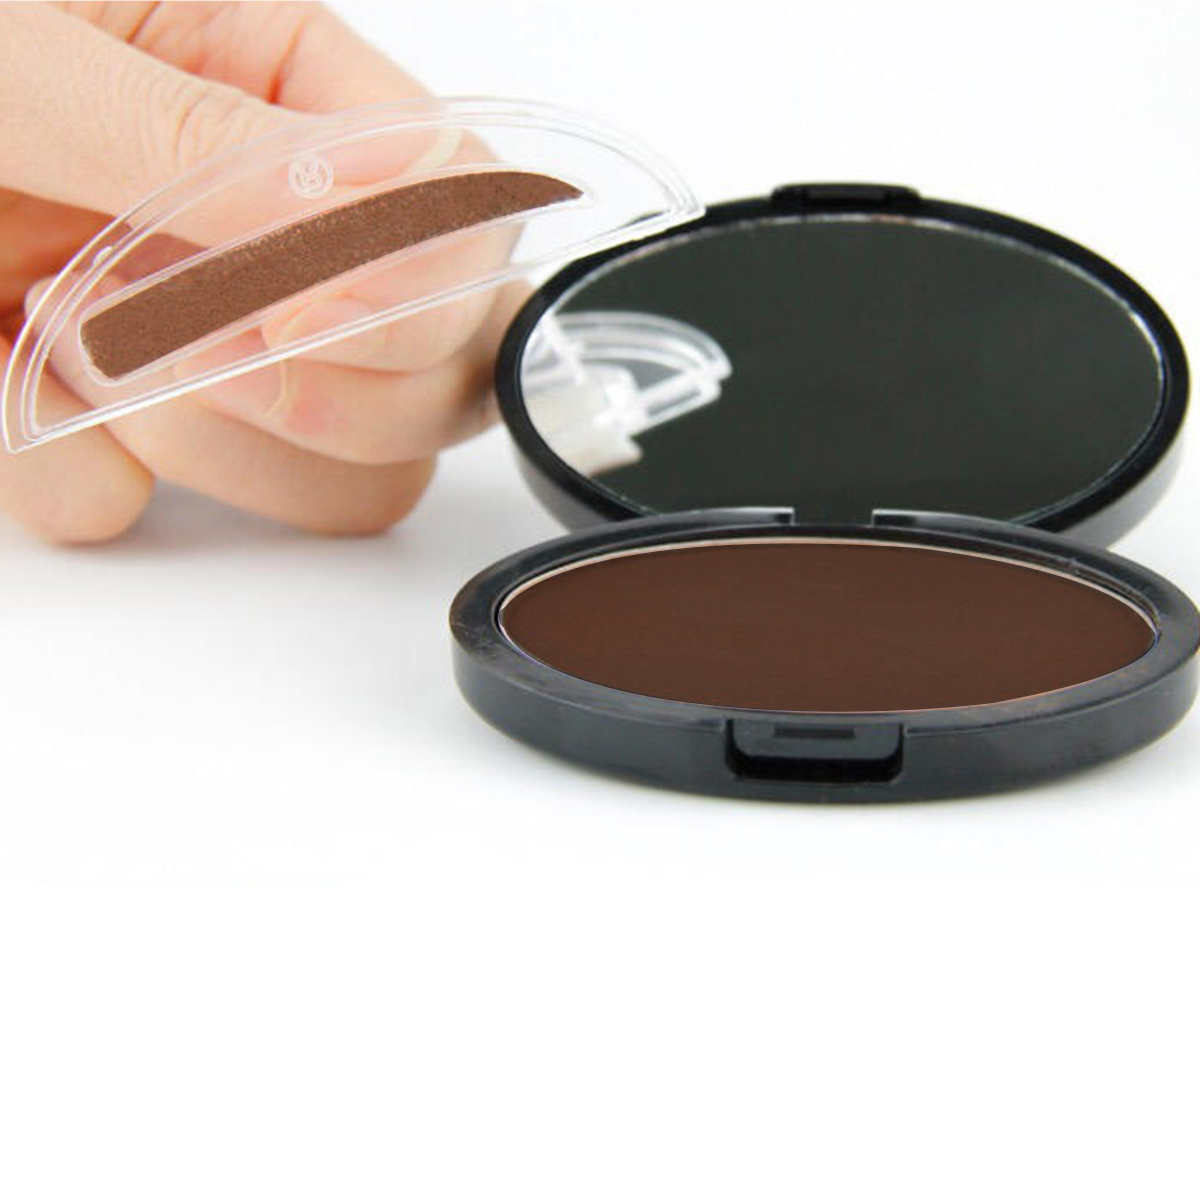 Grey Brown Makeup Eyebrow Gel Brow Stamp Powder Seal Waterproof Eyes Cosmetic Black Head Brush Tools